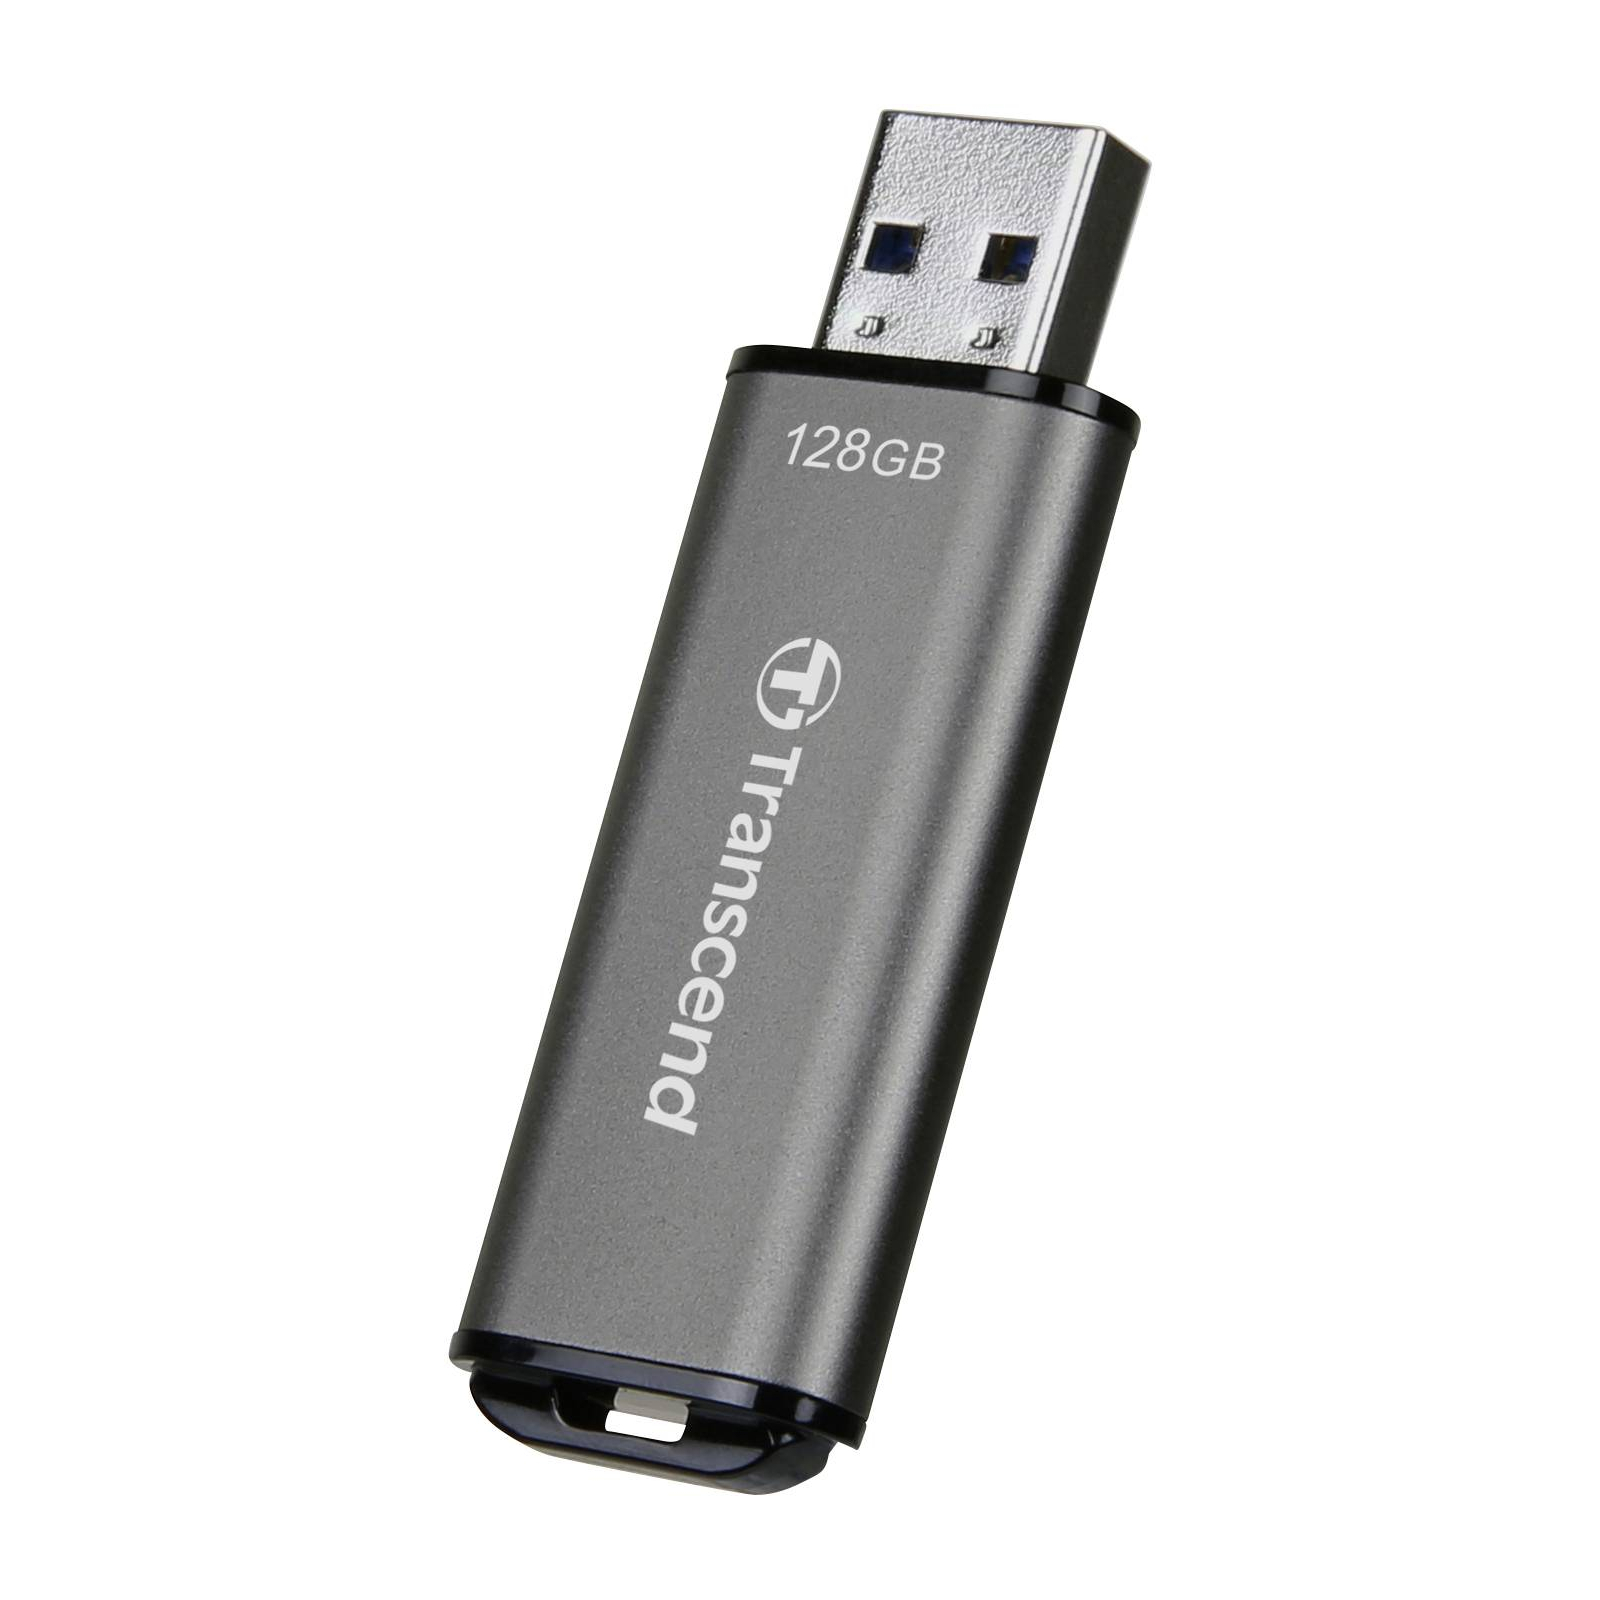 USB флеш накопитель Transcend 256GB JetFlash 920 Black USB 3.2 (TS256GJF920) изображение 3